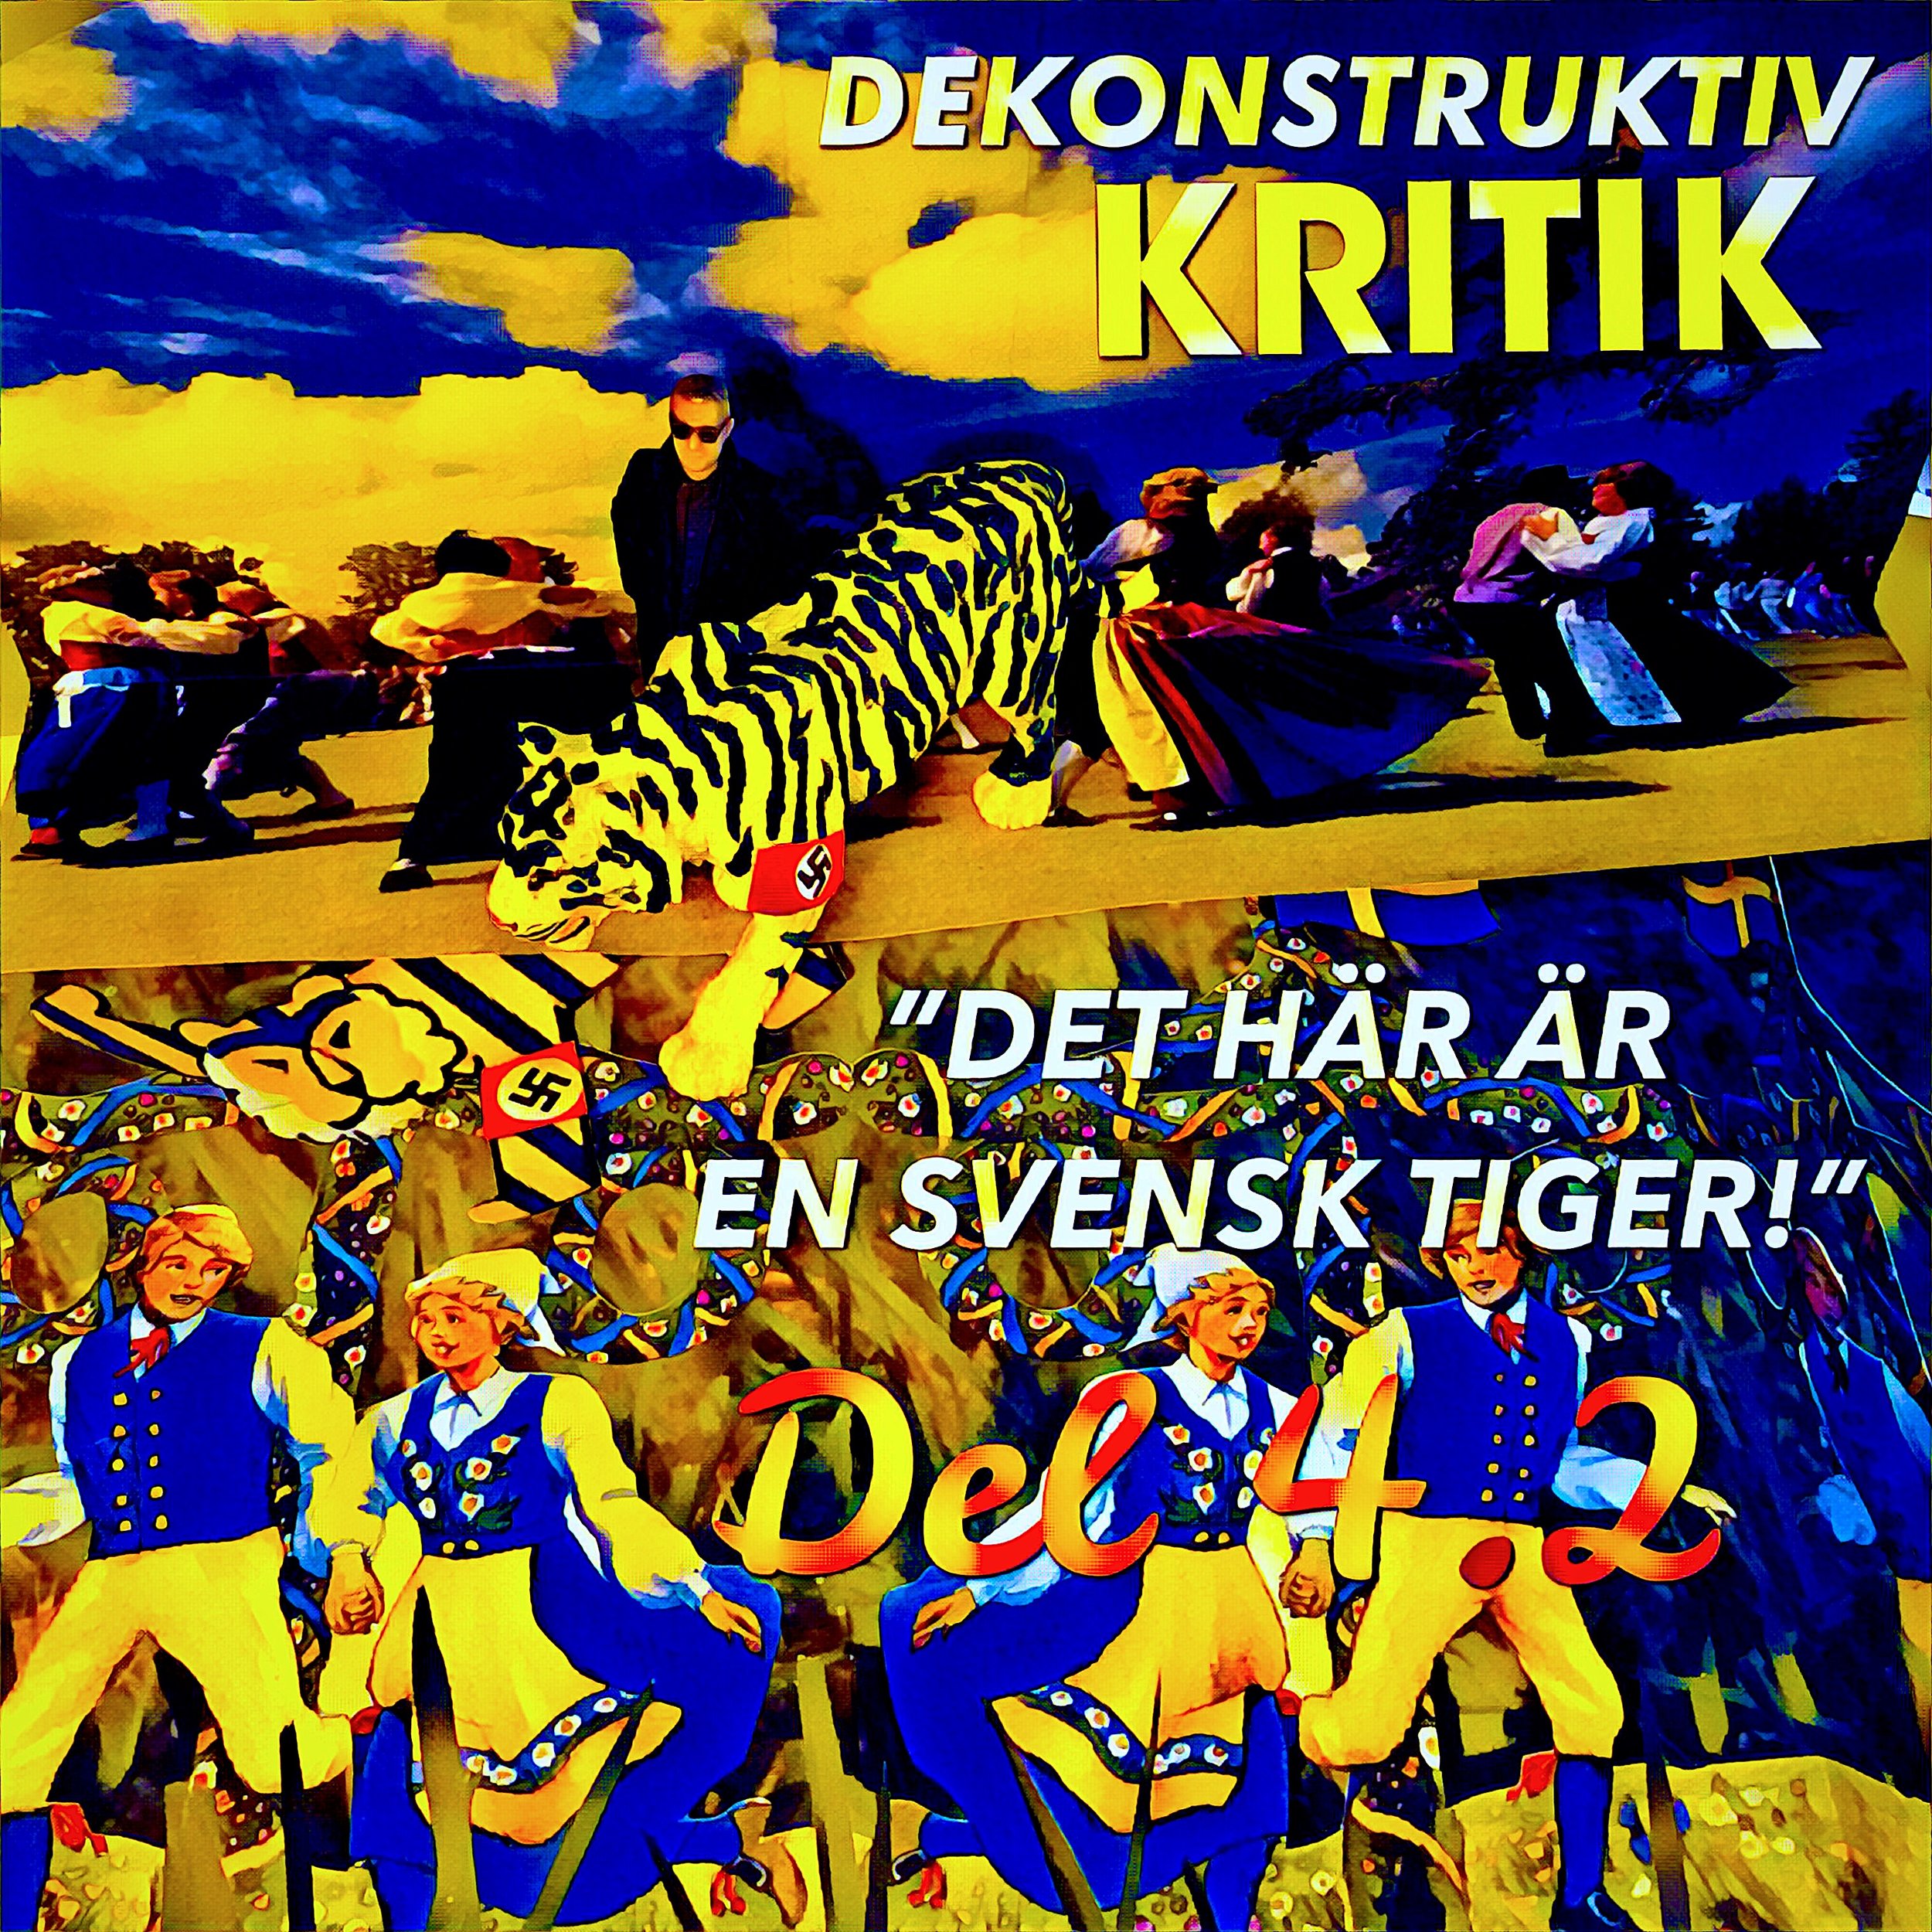 Den svenska tigern och ,mini-Aron på midsommarfirande 2018.